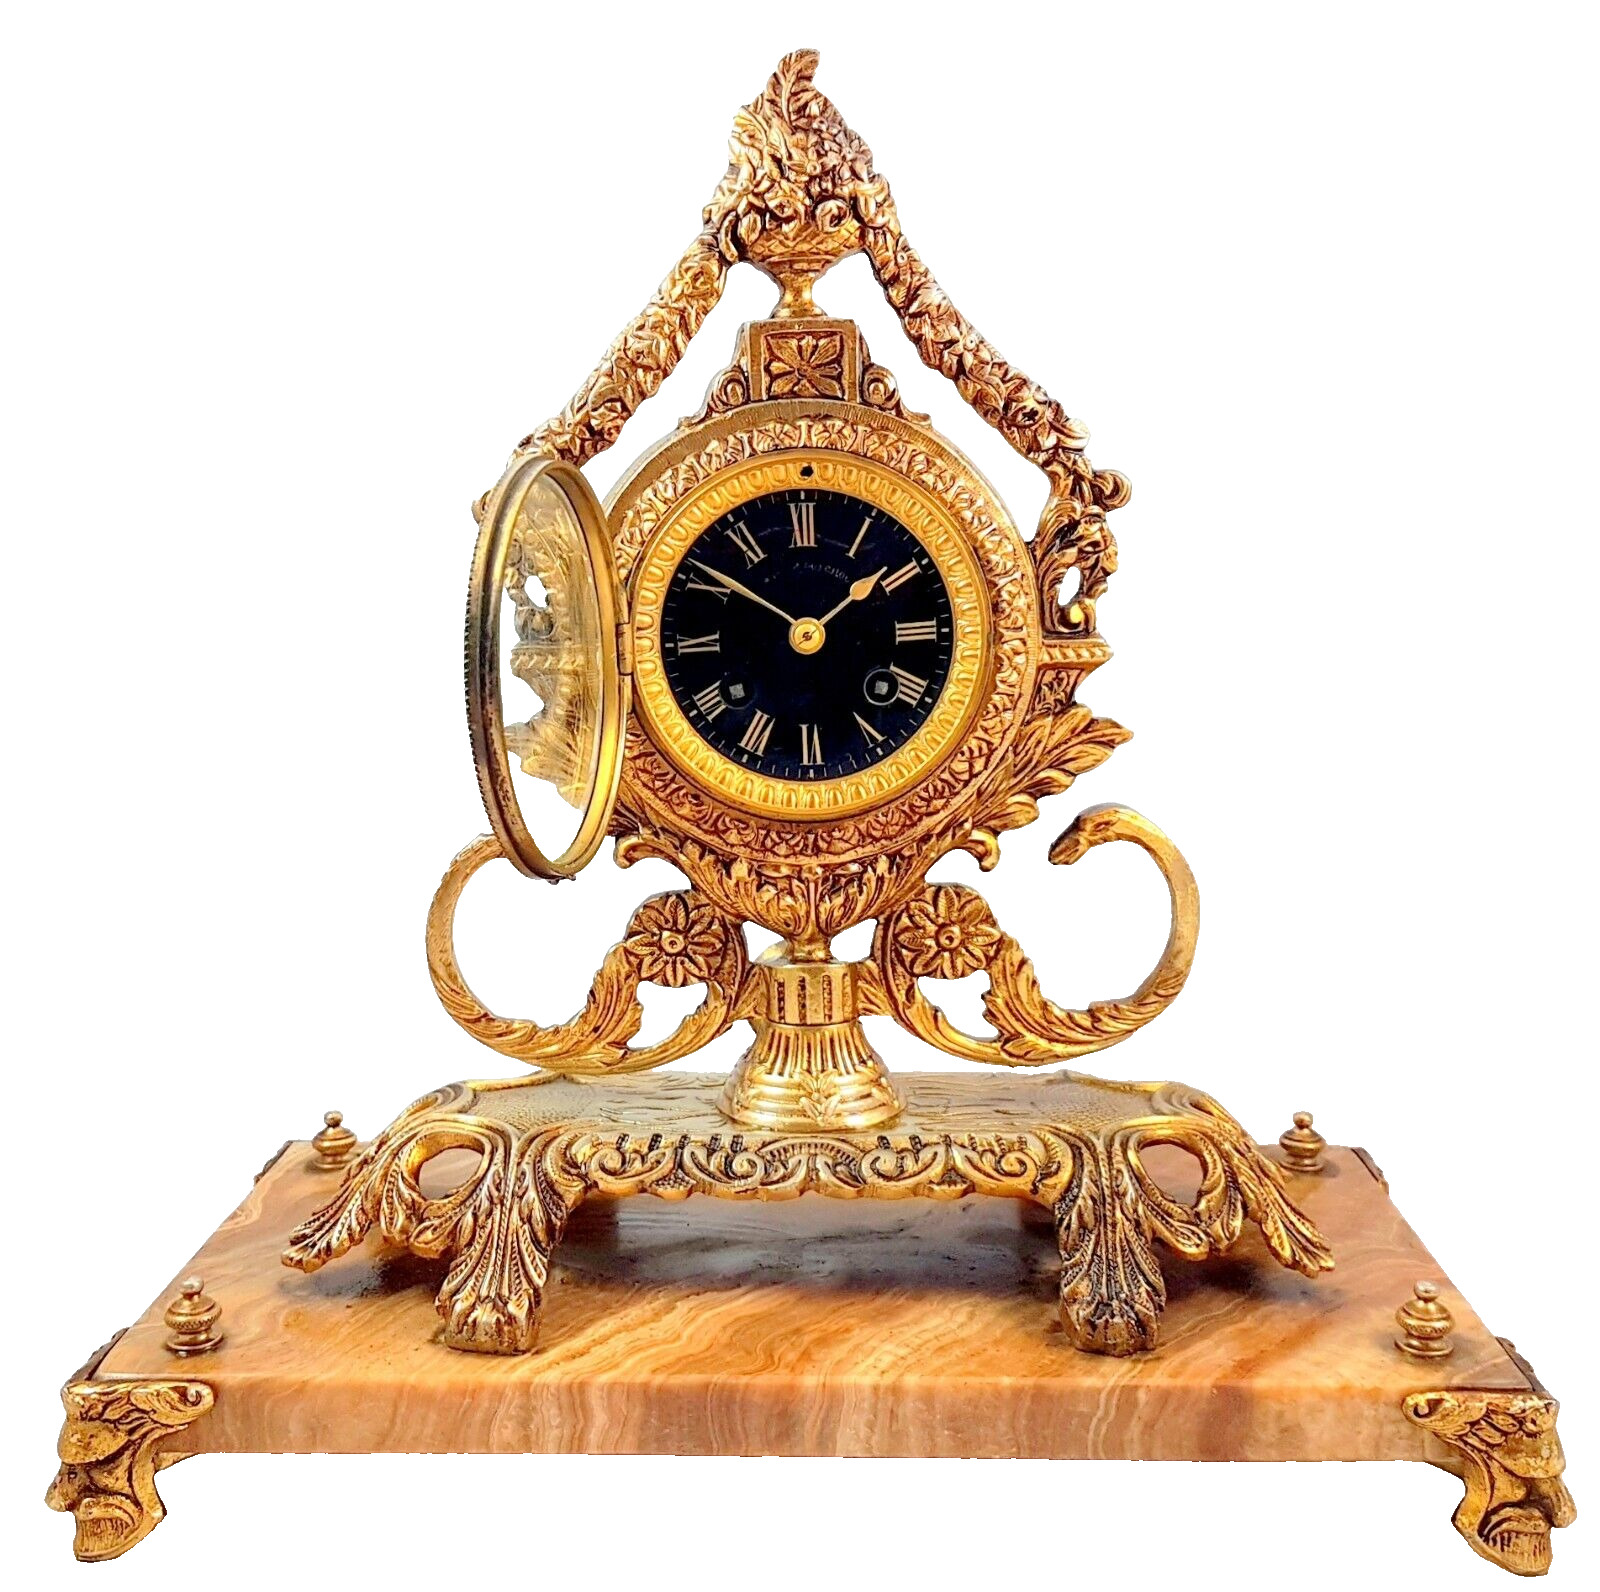 Antique mantel clock bronze Kartell clock Paris 1863 Frédéric Japy marble...